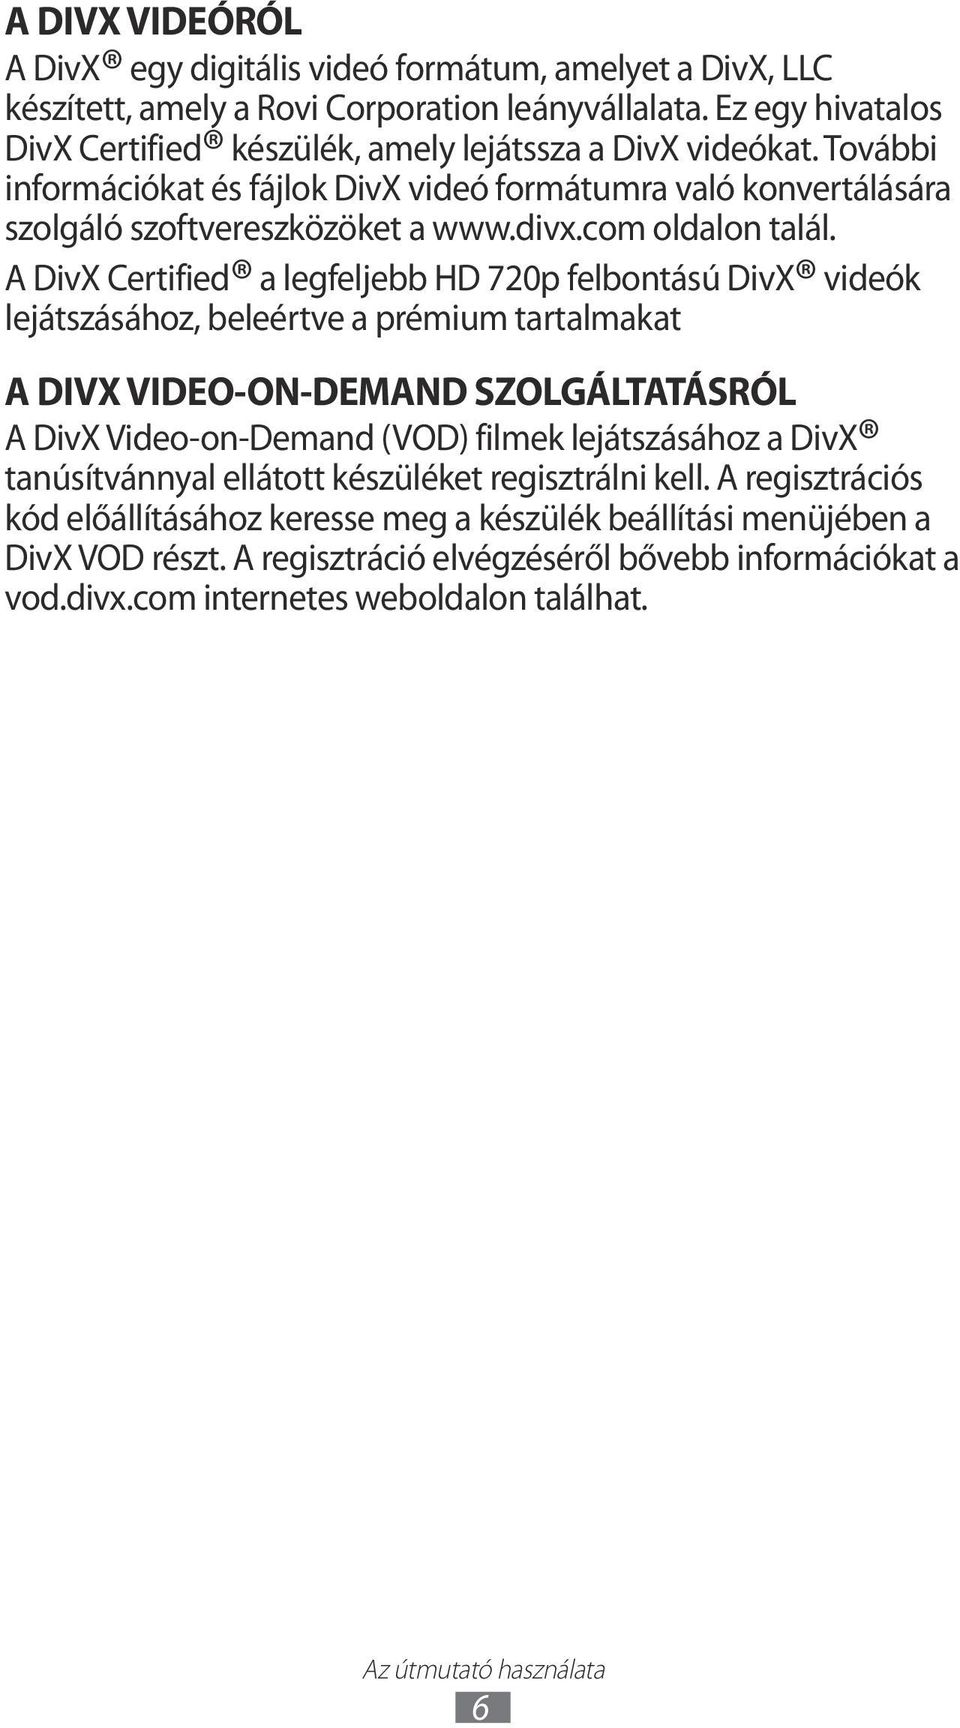 A DivX Certified a legfeljebb HD 720p felbontású DivX videók lejátszásához, beleértve a prémium tartalmakat A DIVX VIDEO-ON-DEMAND SZOLGÁLTATÁSRÓL A DivX Video-on-Demand (VOD) filmek lejátszásához a